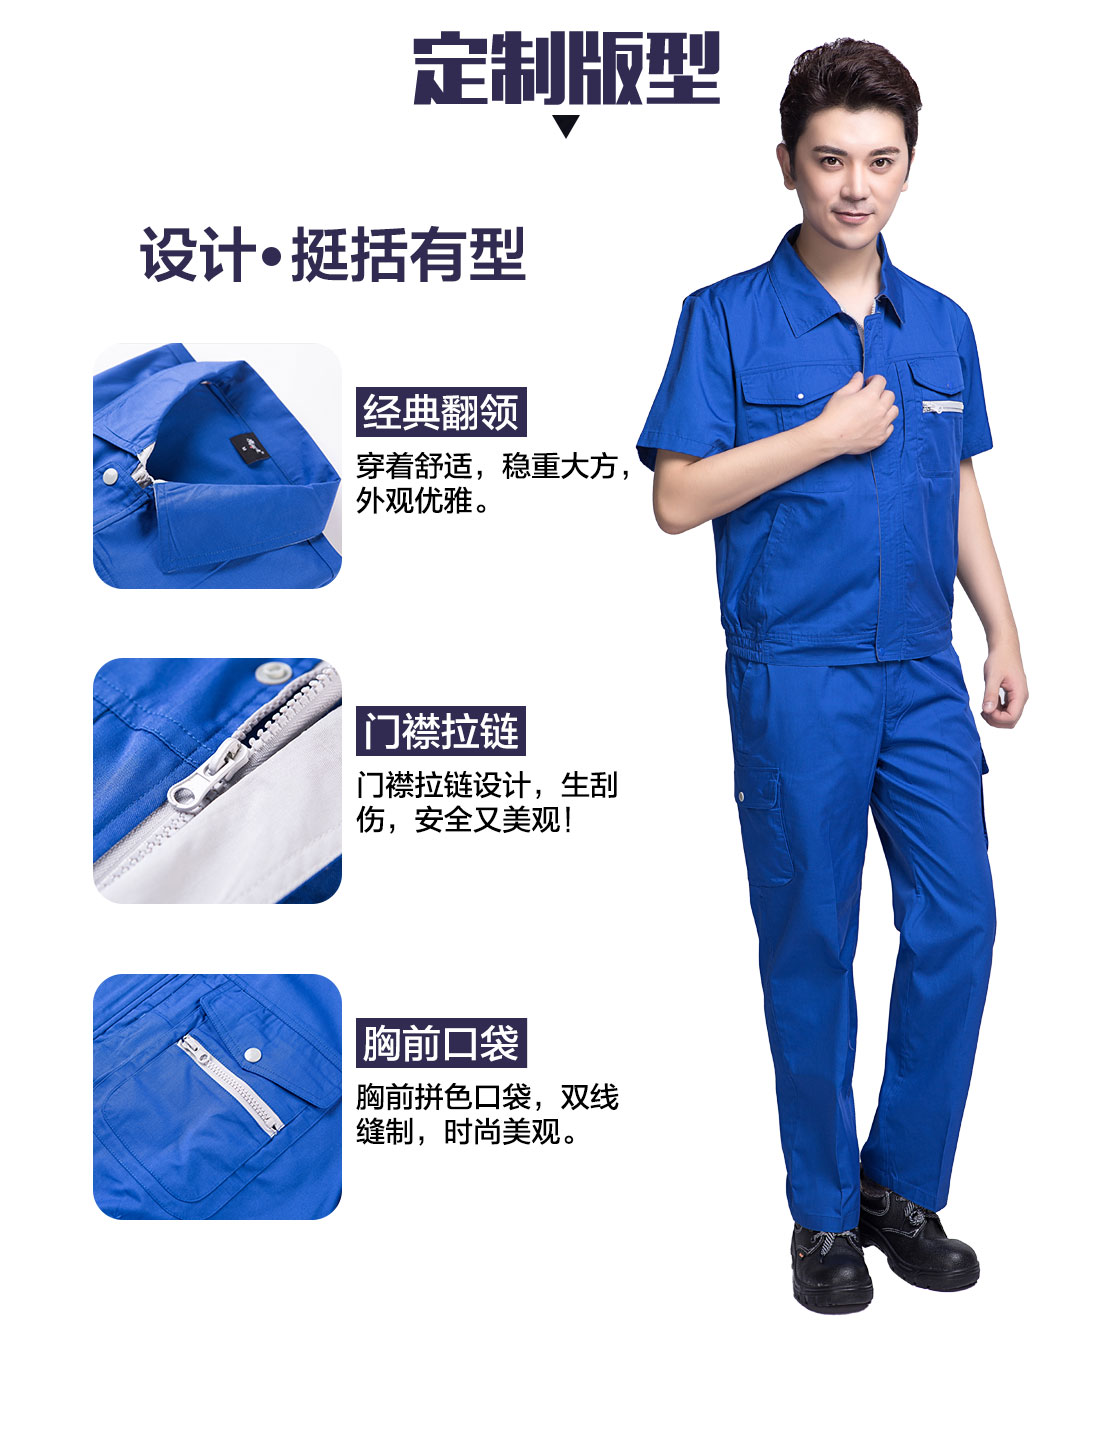 艳蓝色短袖工作服的3D立体版型设计